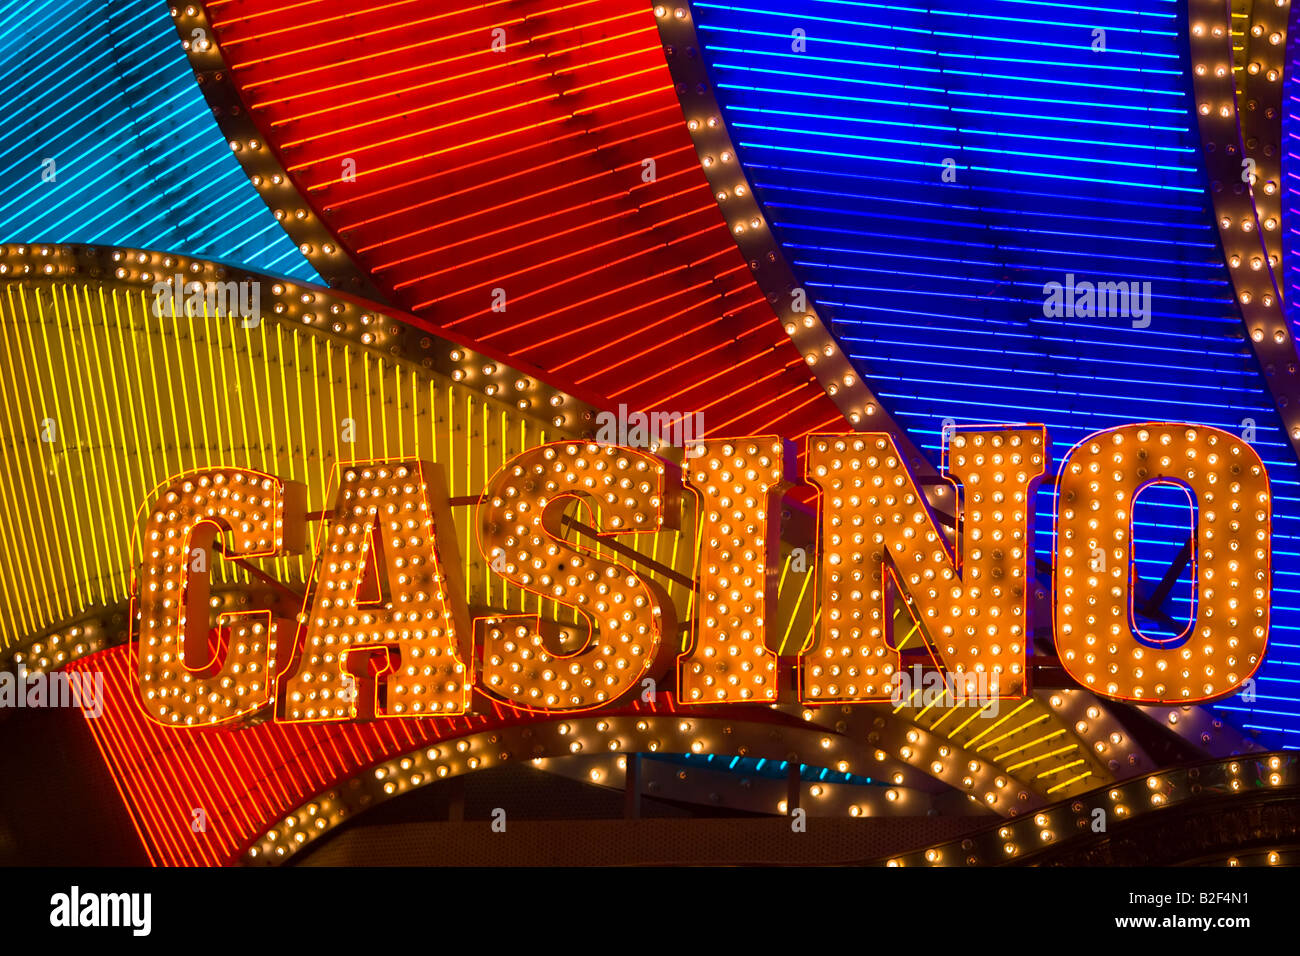 Chine - Macao néons et des signes de Casino Lisboa de nuit. Macao est la seule région de Chine où le jeu est autorisé. Banque D'Images